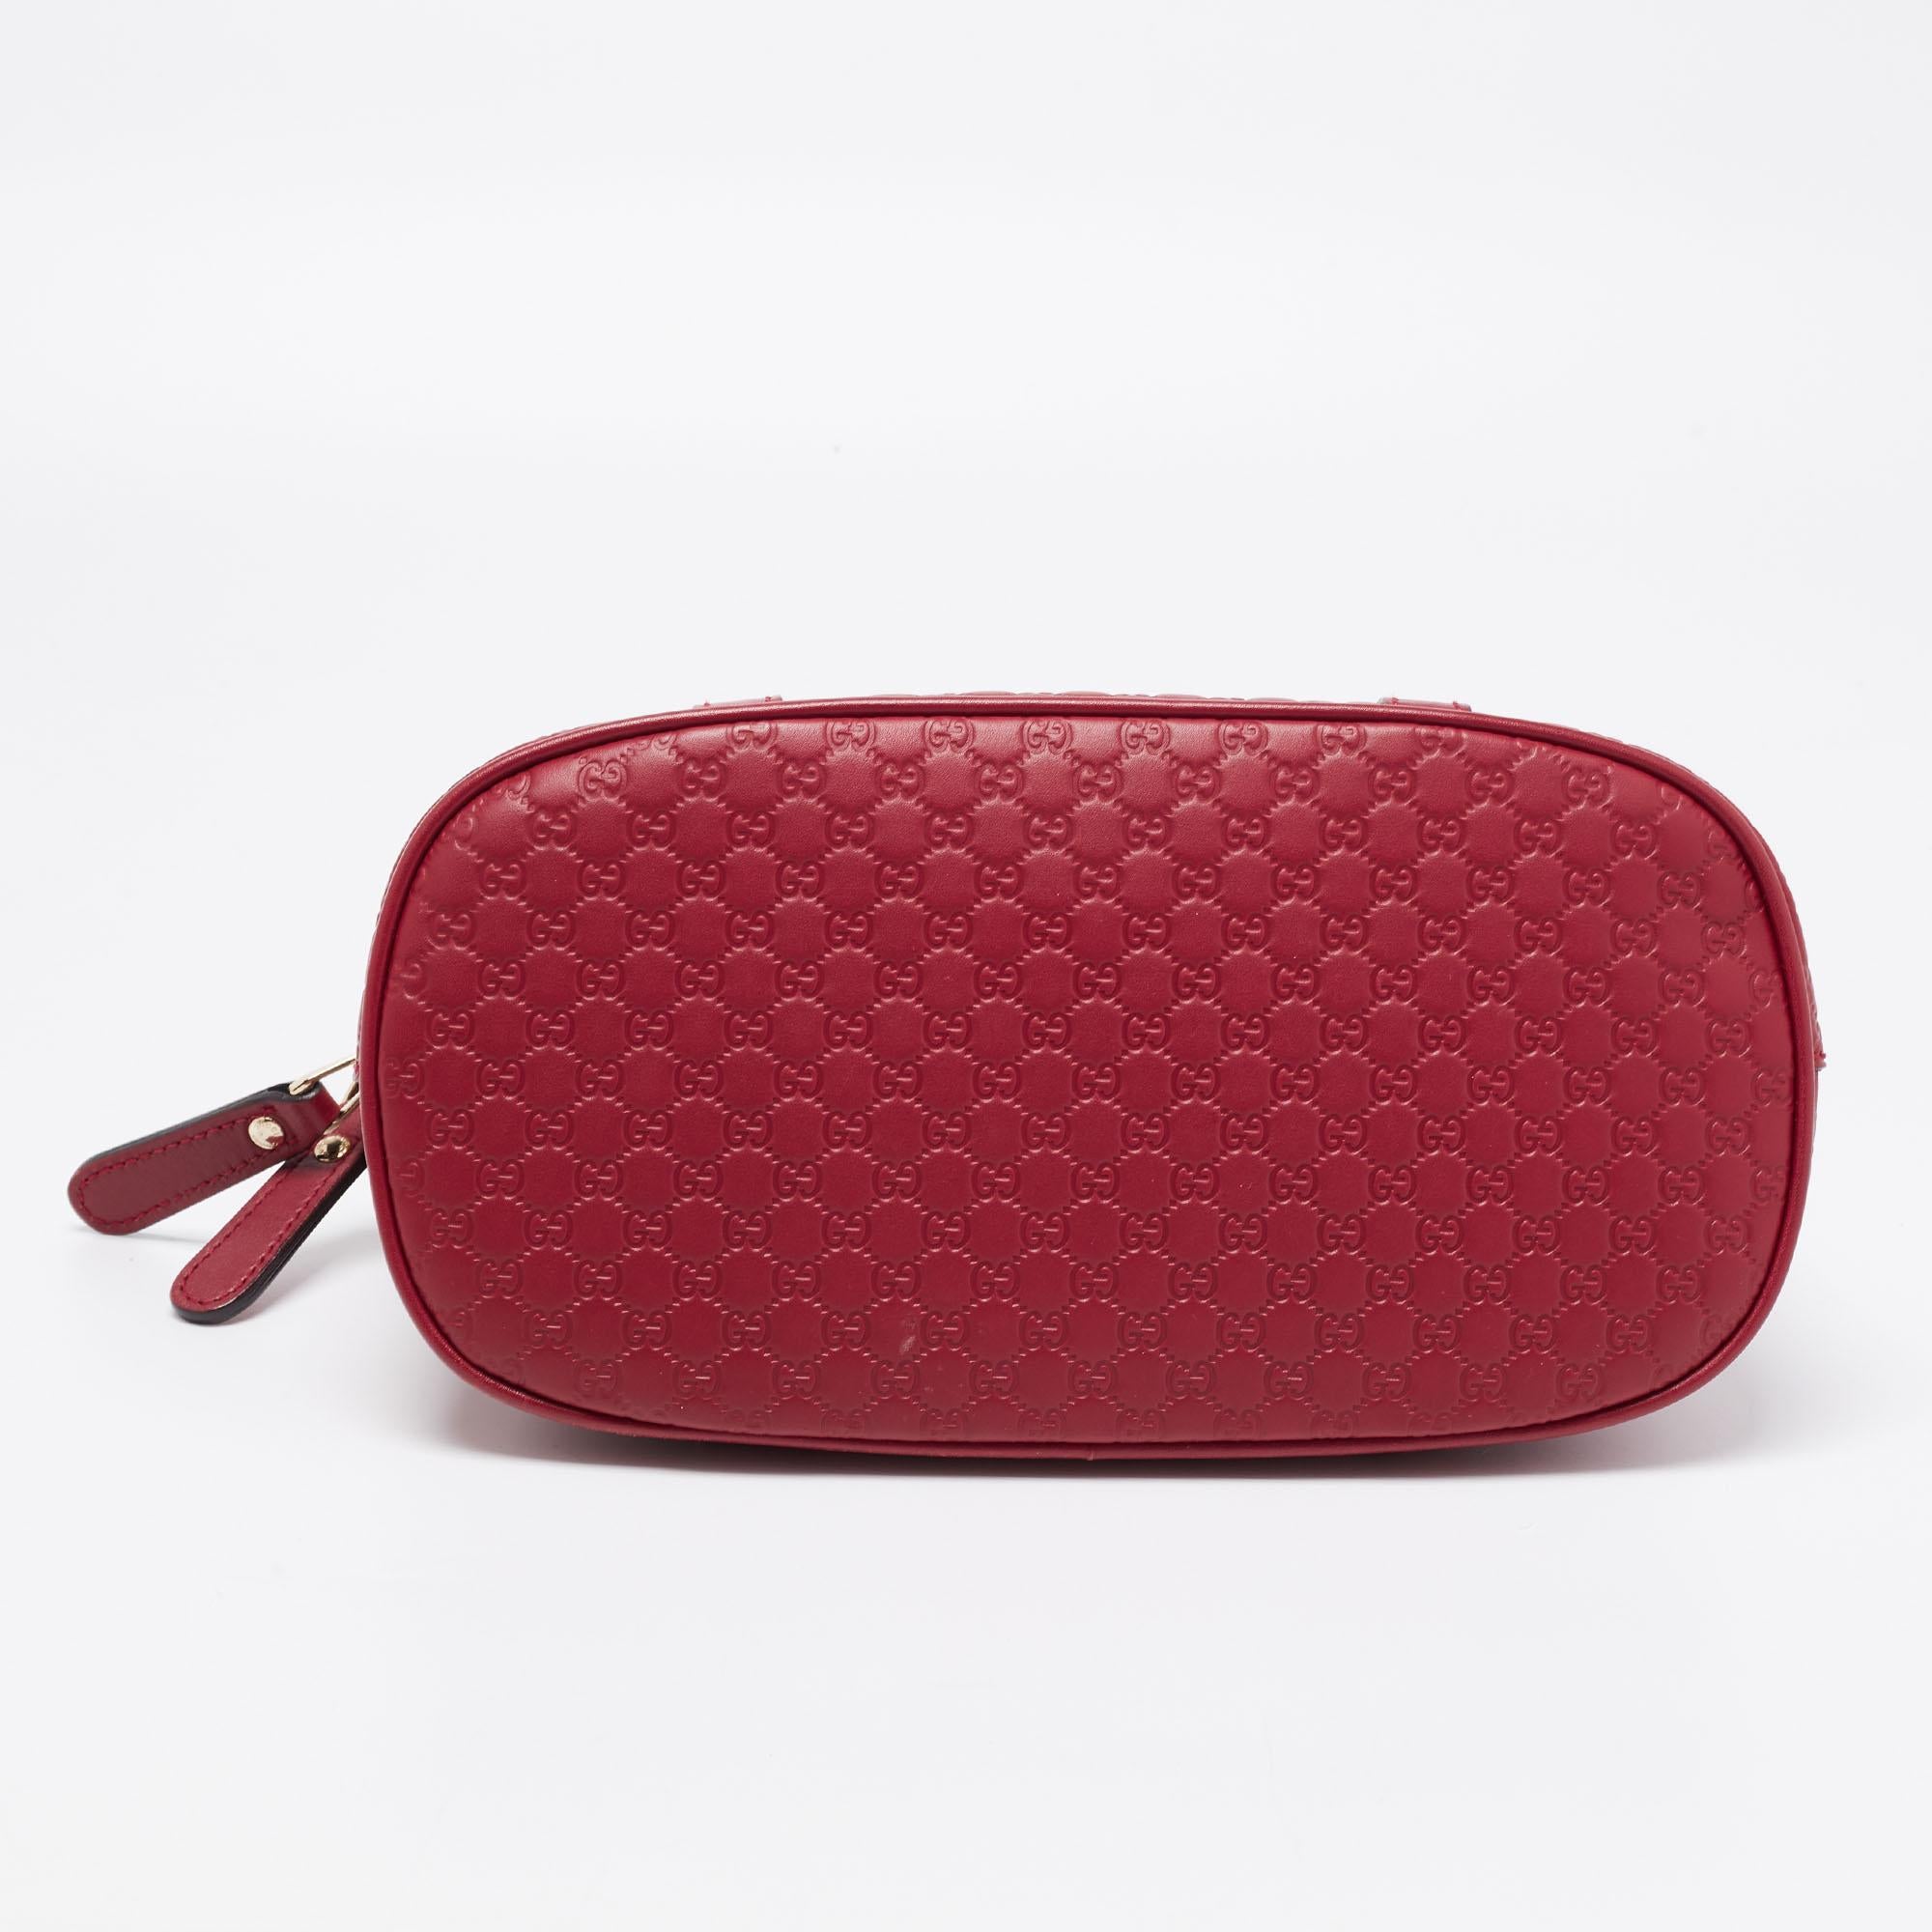 Gucci Red Microguccissima Leather Mini Dome Bag 1